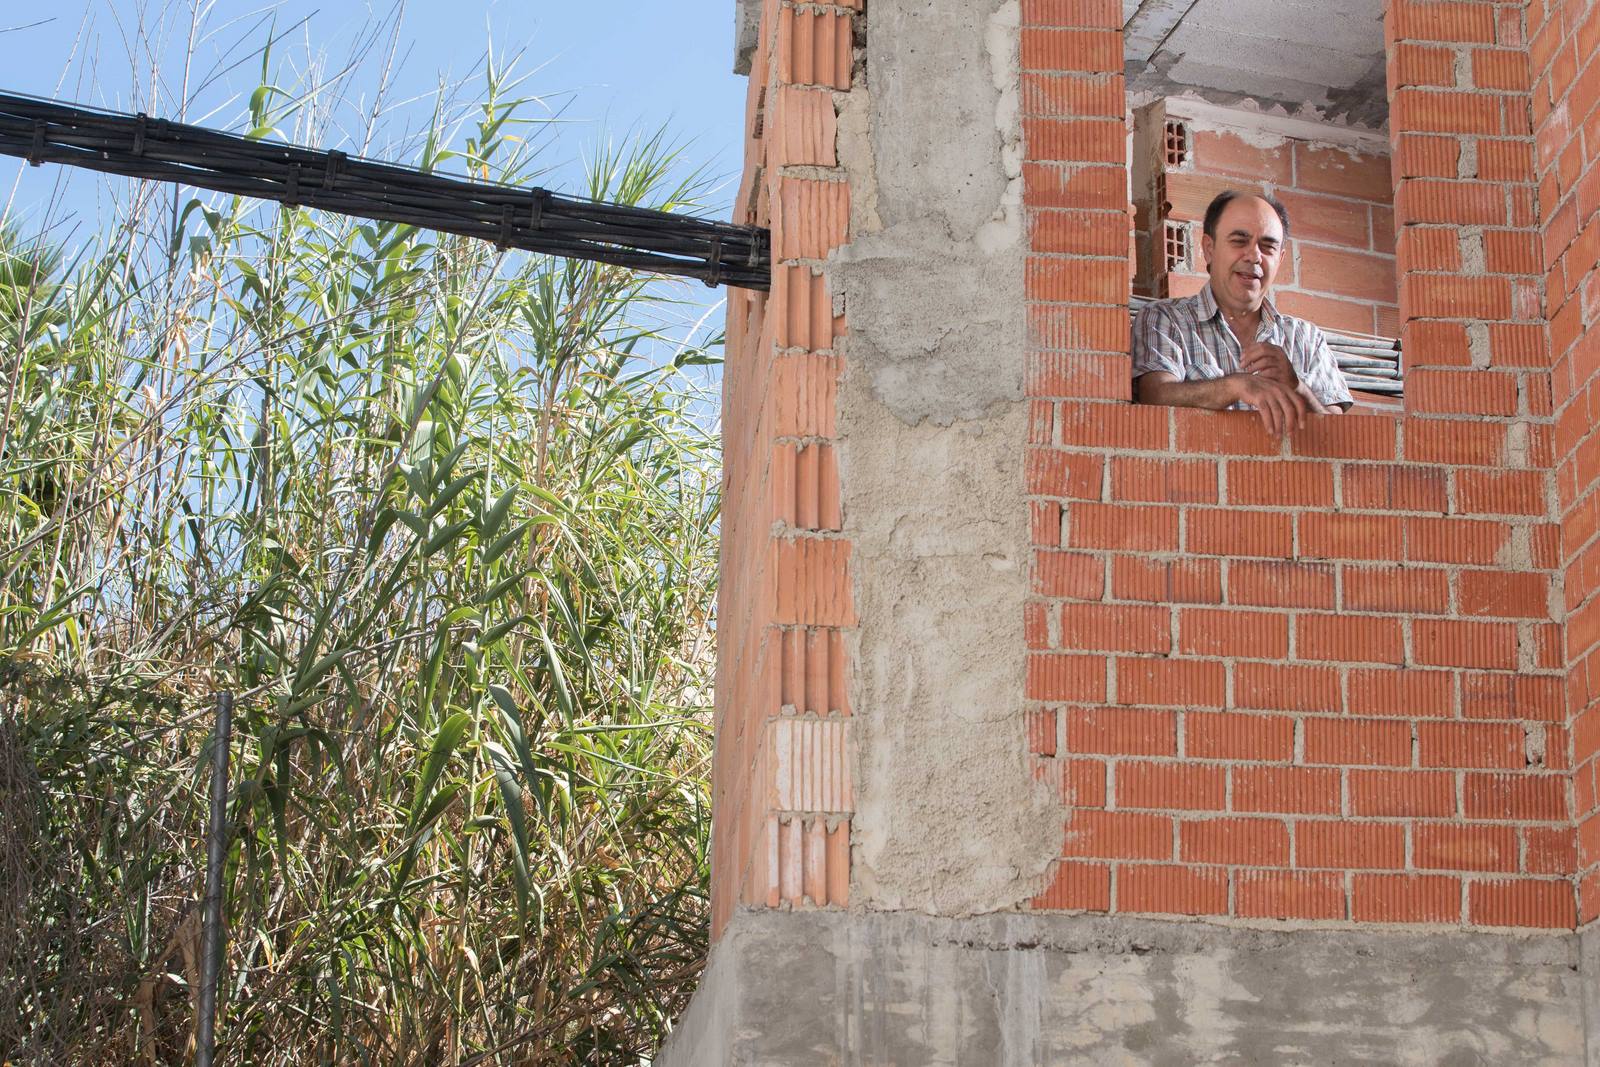 Antonio Ramón Ortiz espera desde hace 13 años a que la empresa suministradora modifique el trayecto de los cables que atraviesan su vivienda.